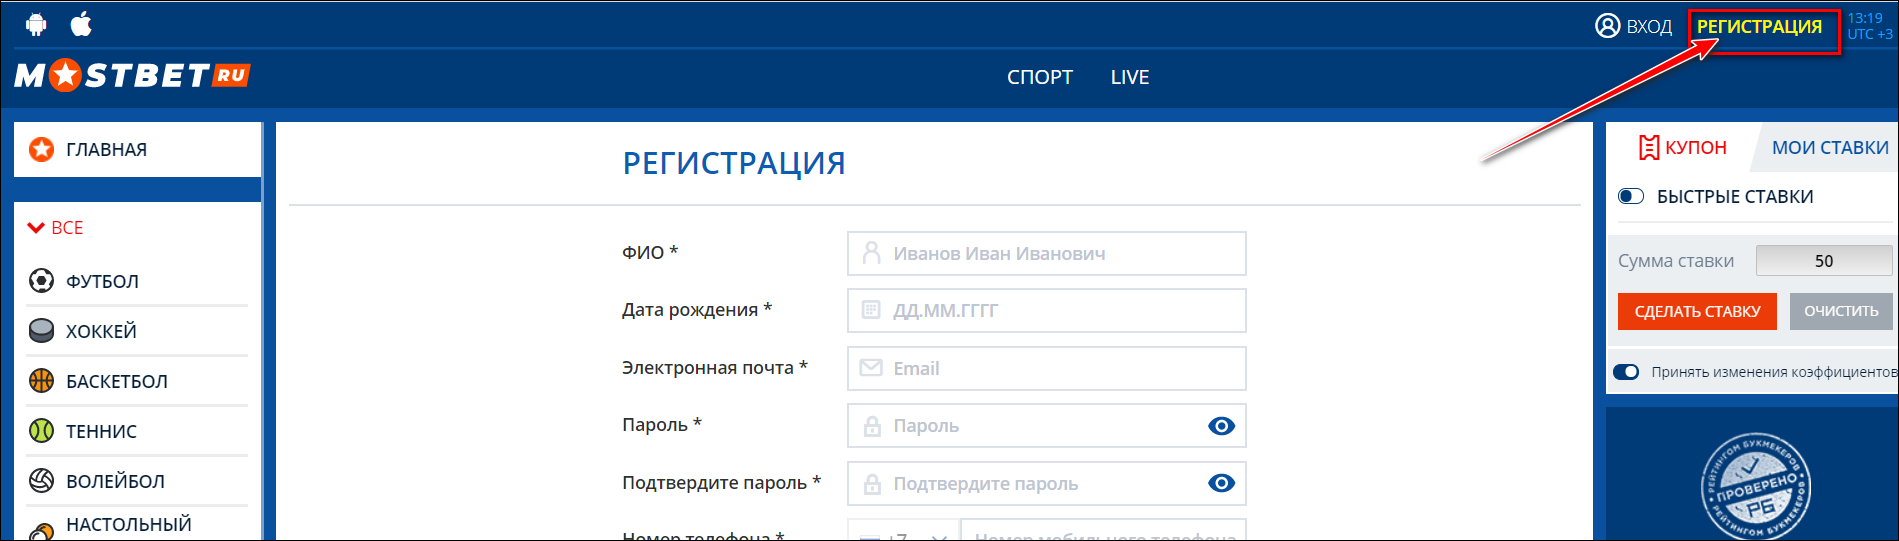 Мостбет вход https mostbet 666 ru стратегии ставок на виртуальный спорт